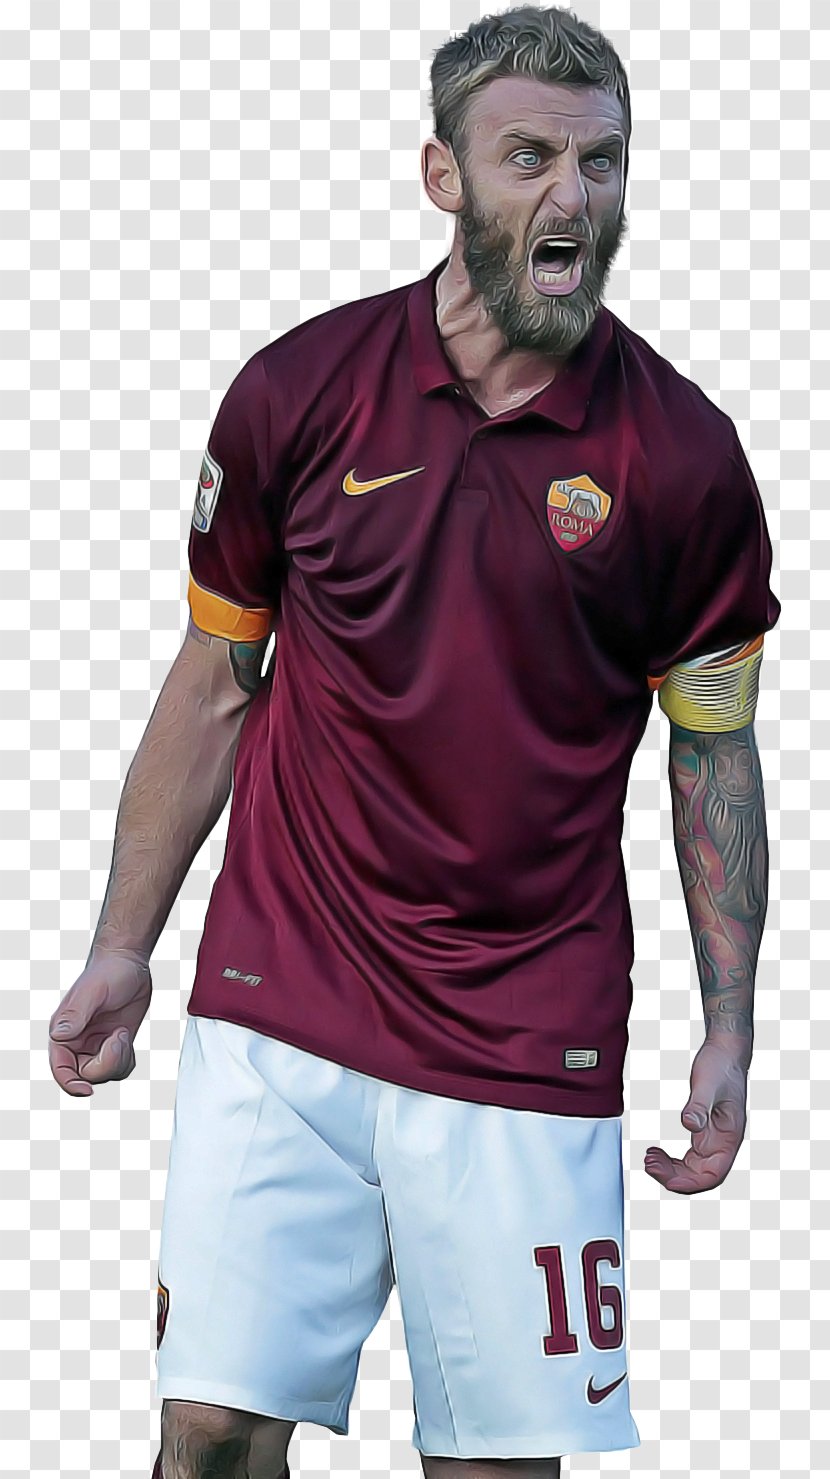 Messi Cartoon - Football - Player Uniform Transparent PNG